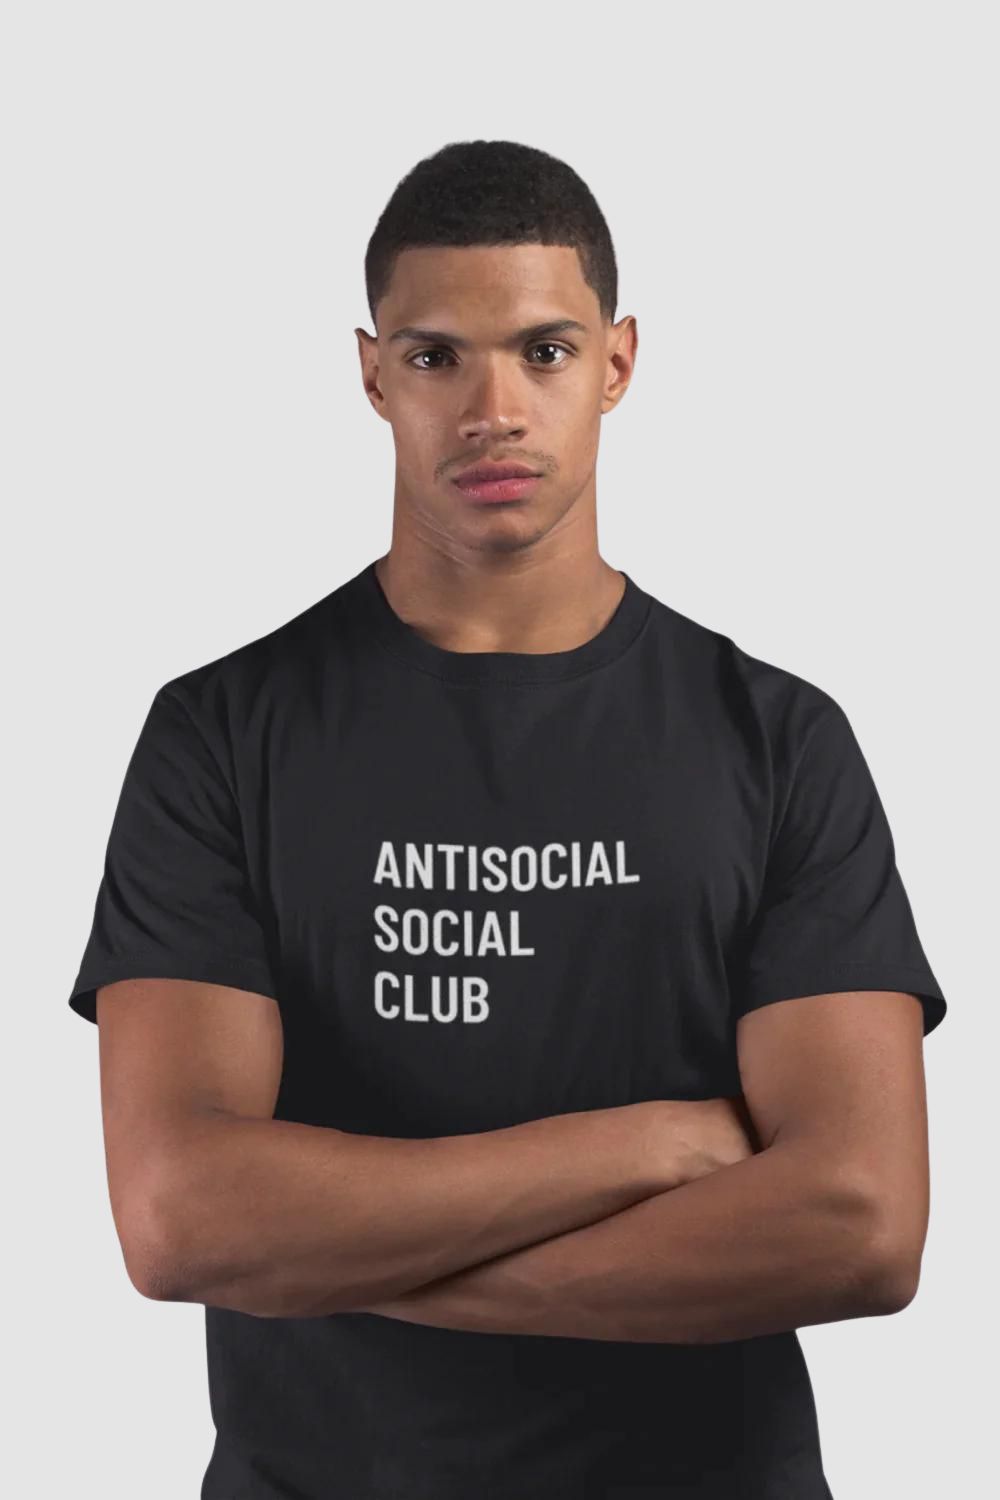 Antisocial Social Club Graphic Printed Black Tshirt